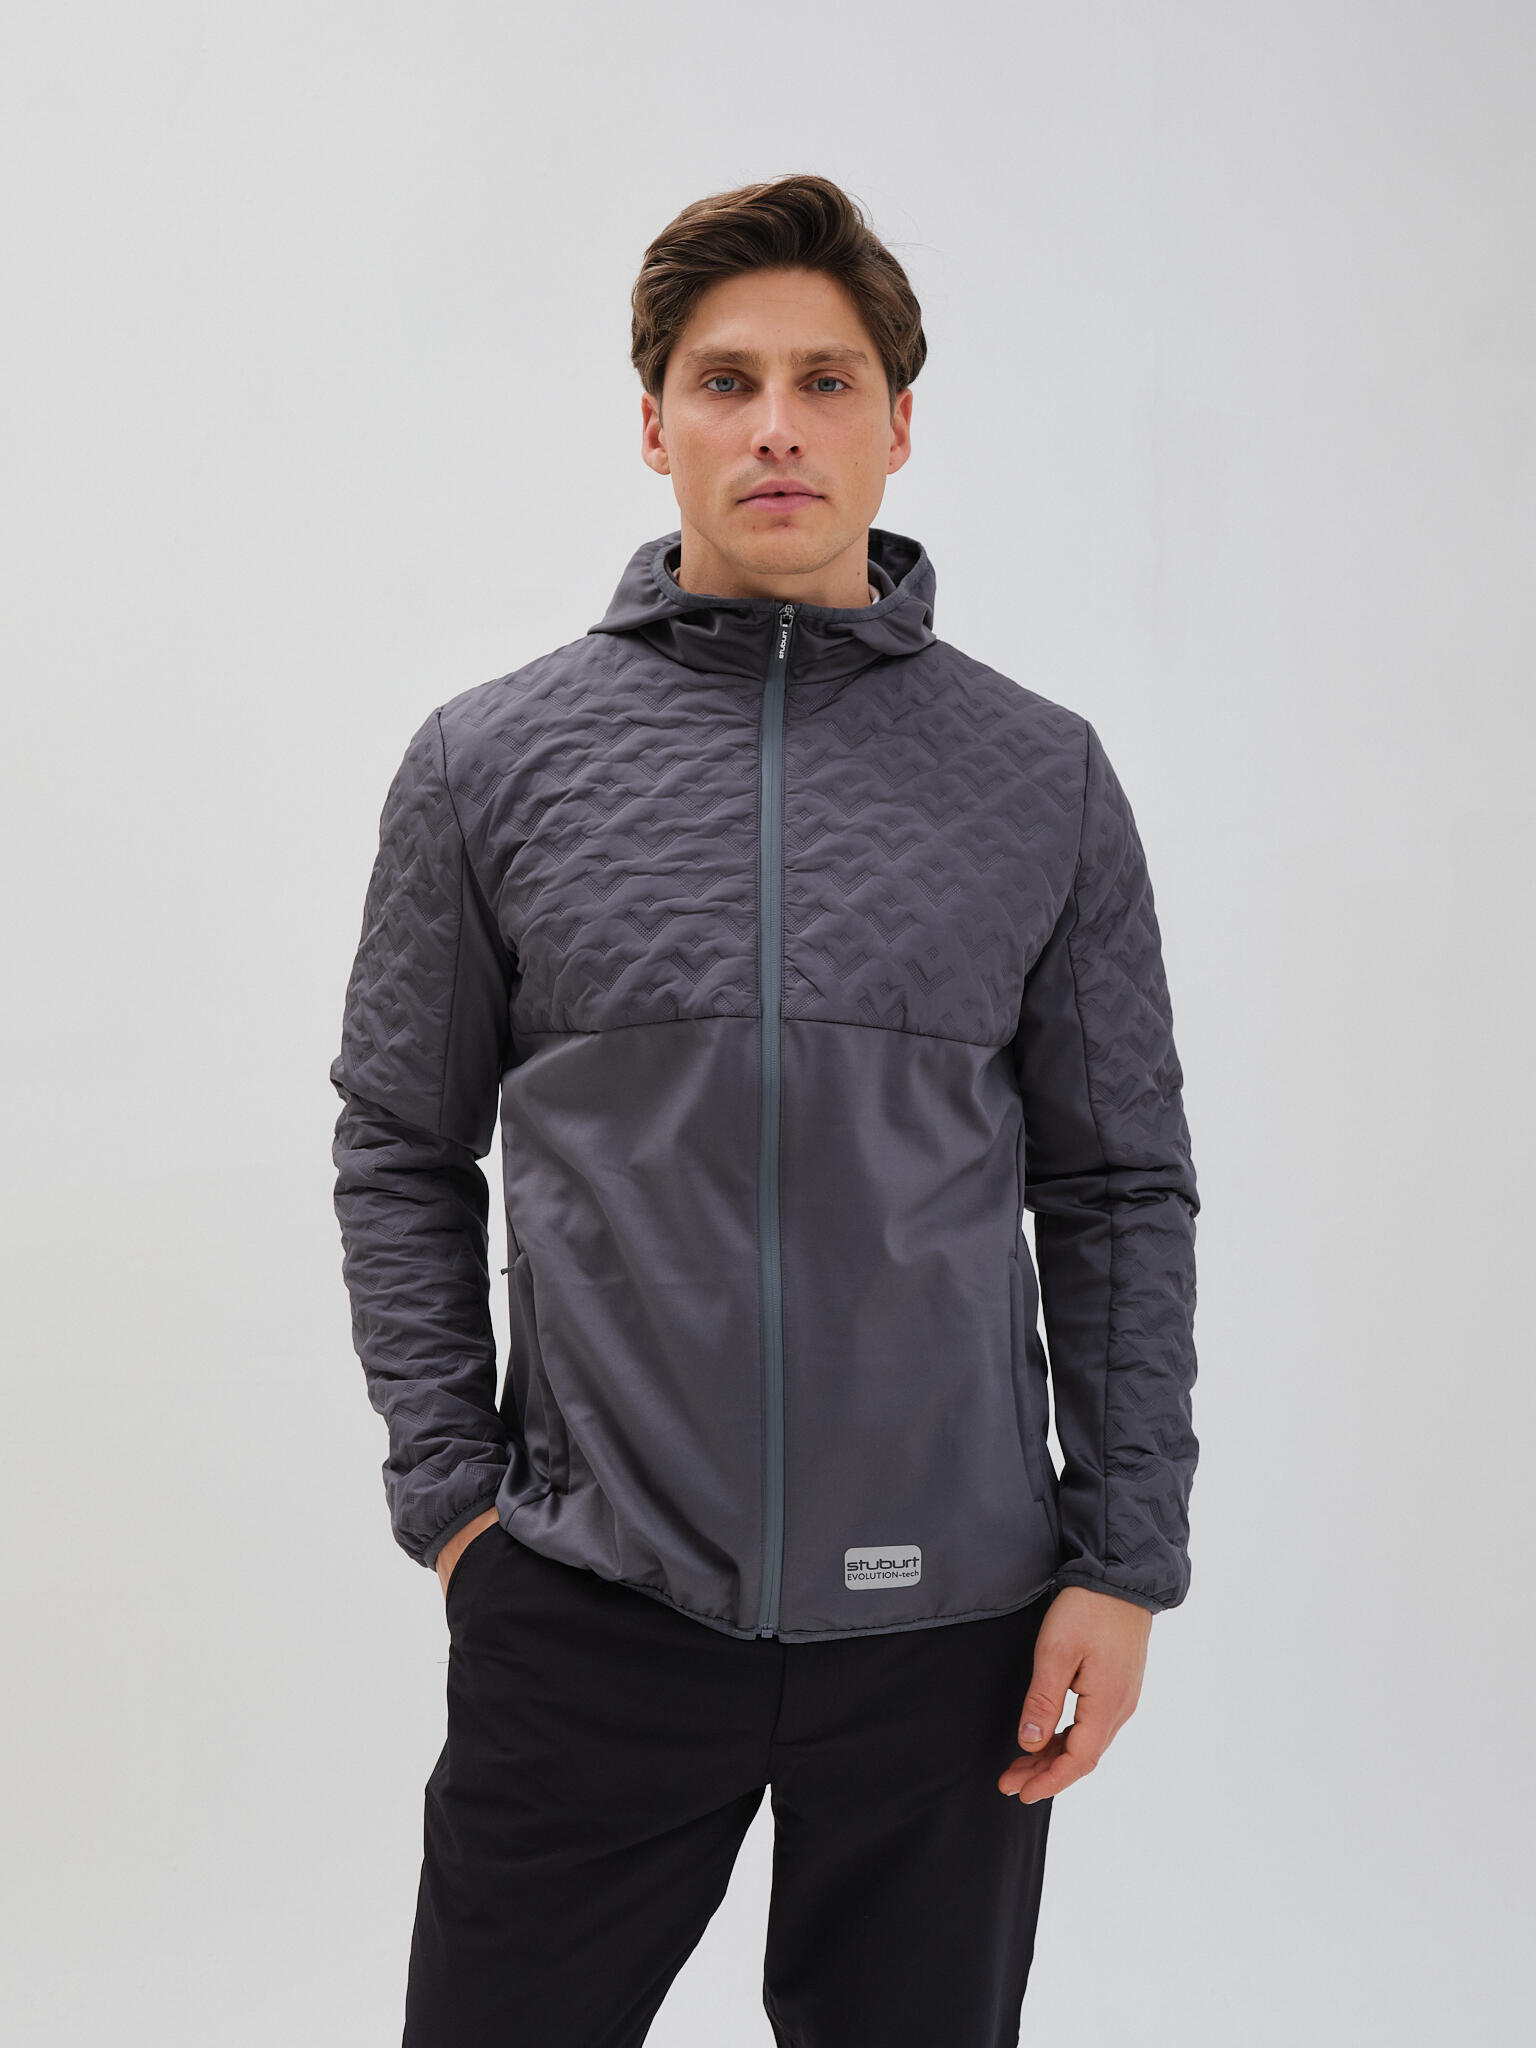 Men's Outdoor Coats and Jackets | Decathlon